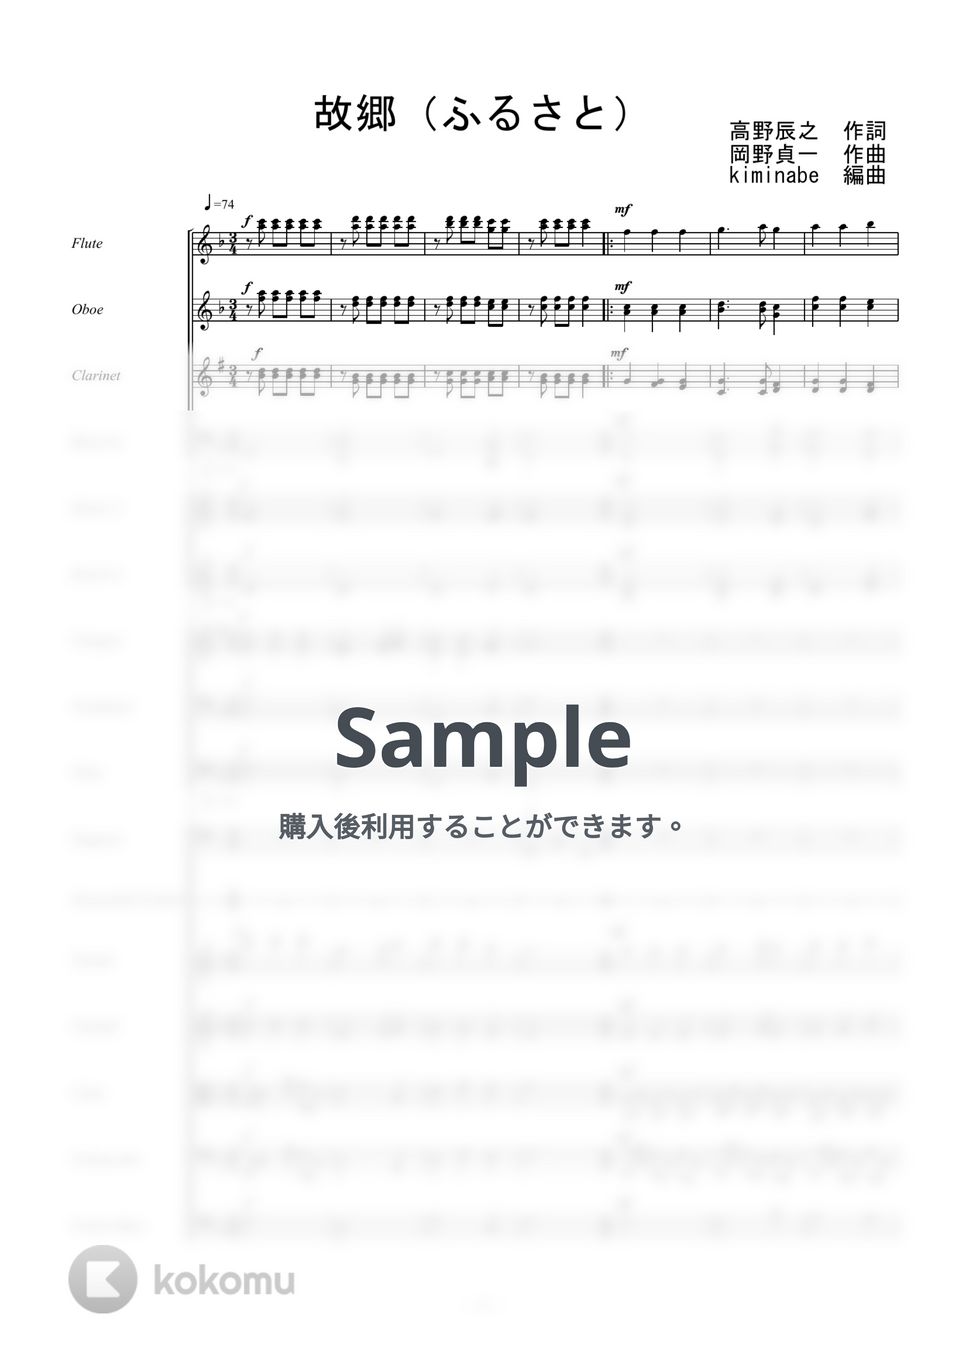 文部省唱歌 - 故郷（ふるさと） (オーケストラ譜) by kiminabe